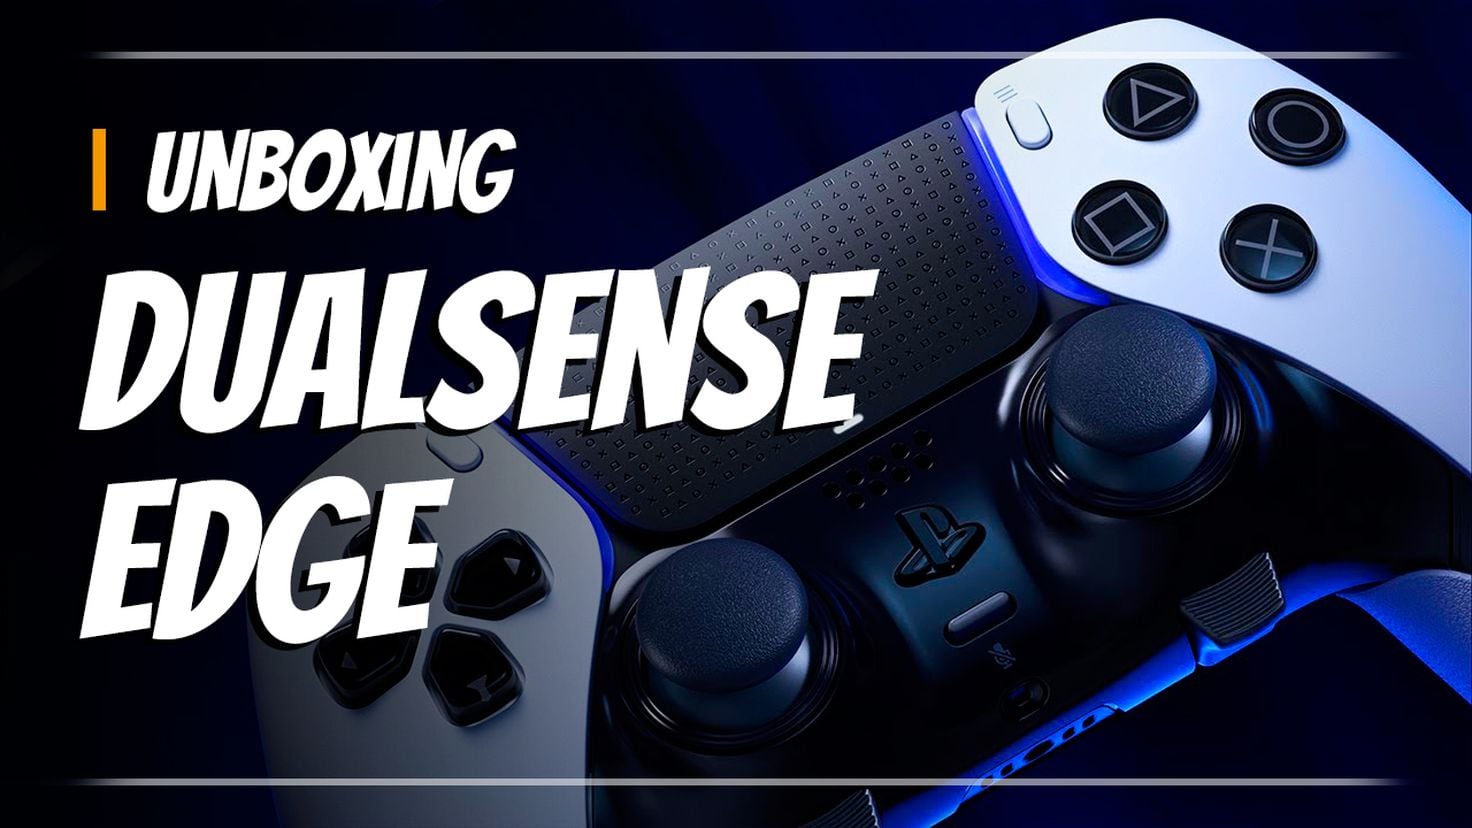 Unboxing: así es DualSense Edge, el mando más avanzado de PS5 - Meristation